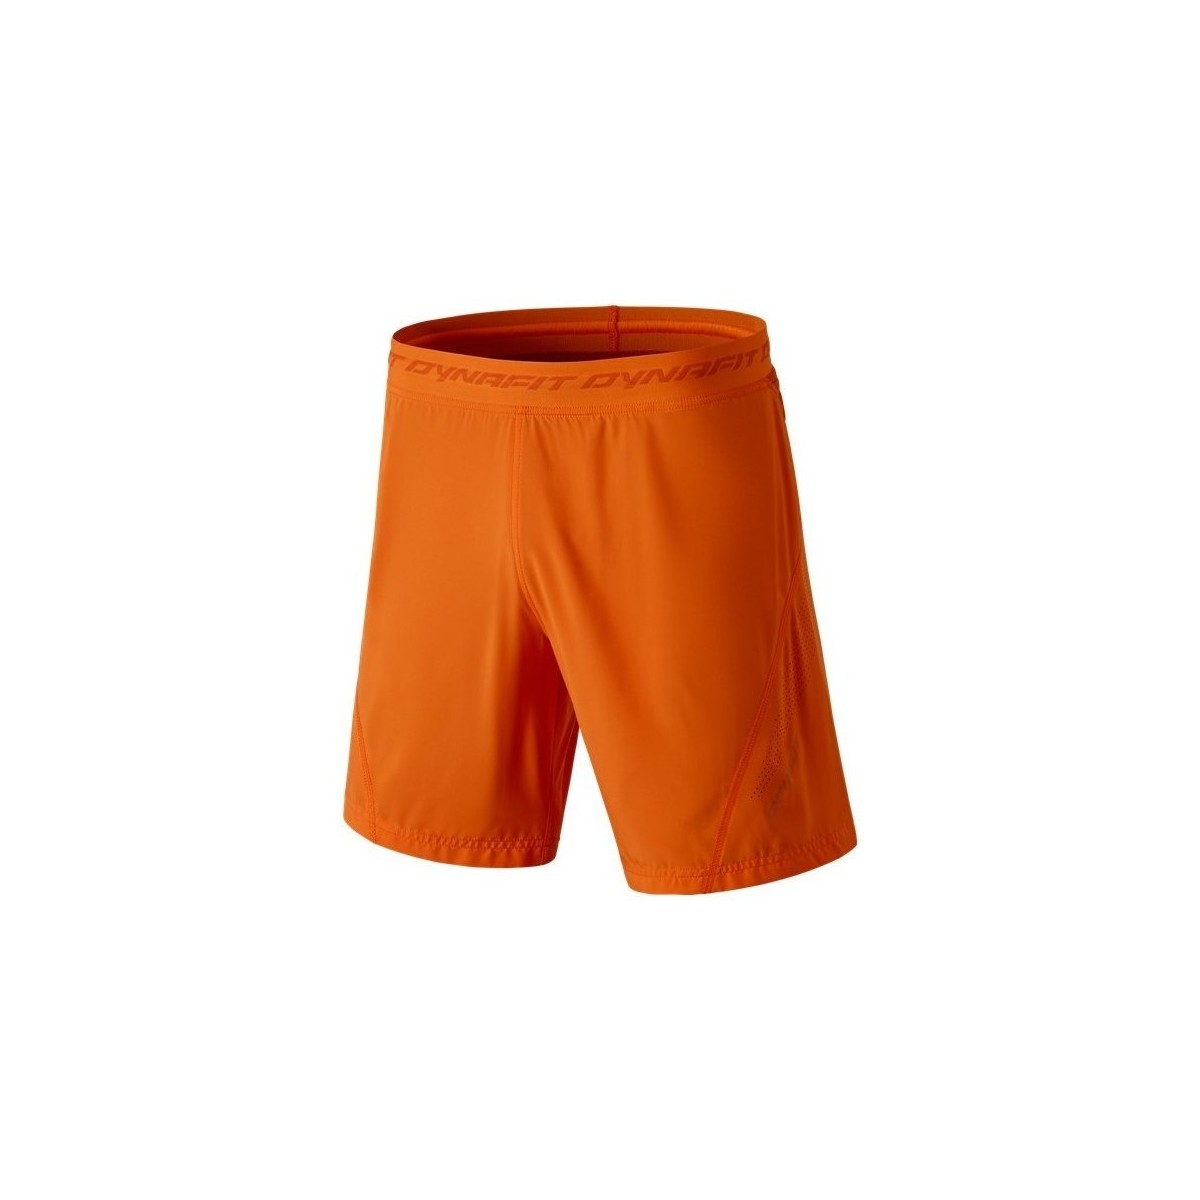 Îmbracaminte Bărbați Pantaloni trei sferturi Dynafit React 2 Dst M portocaliu